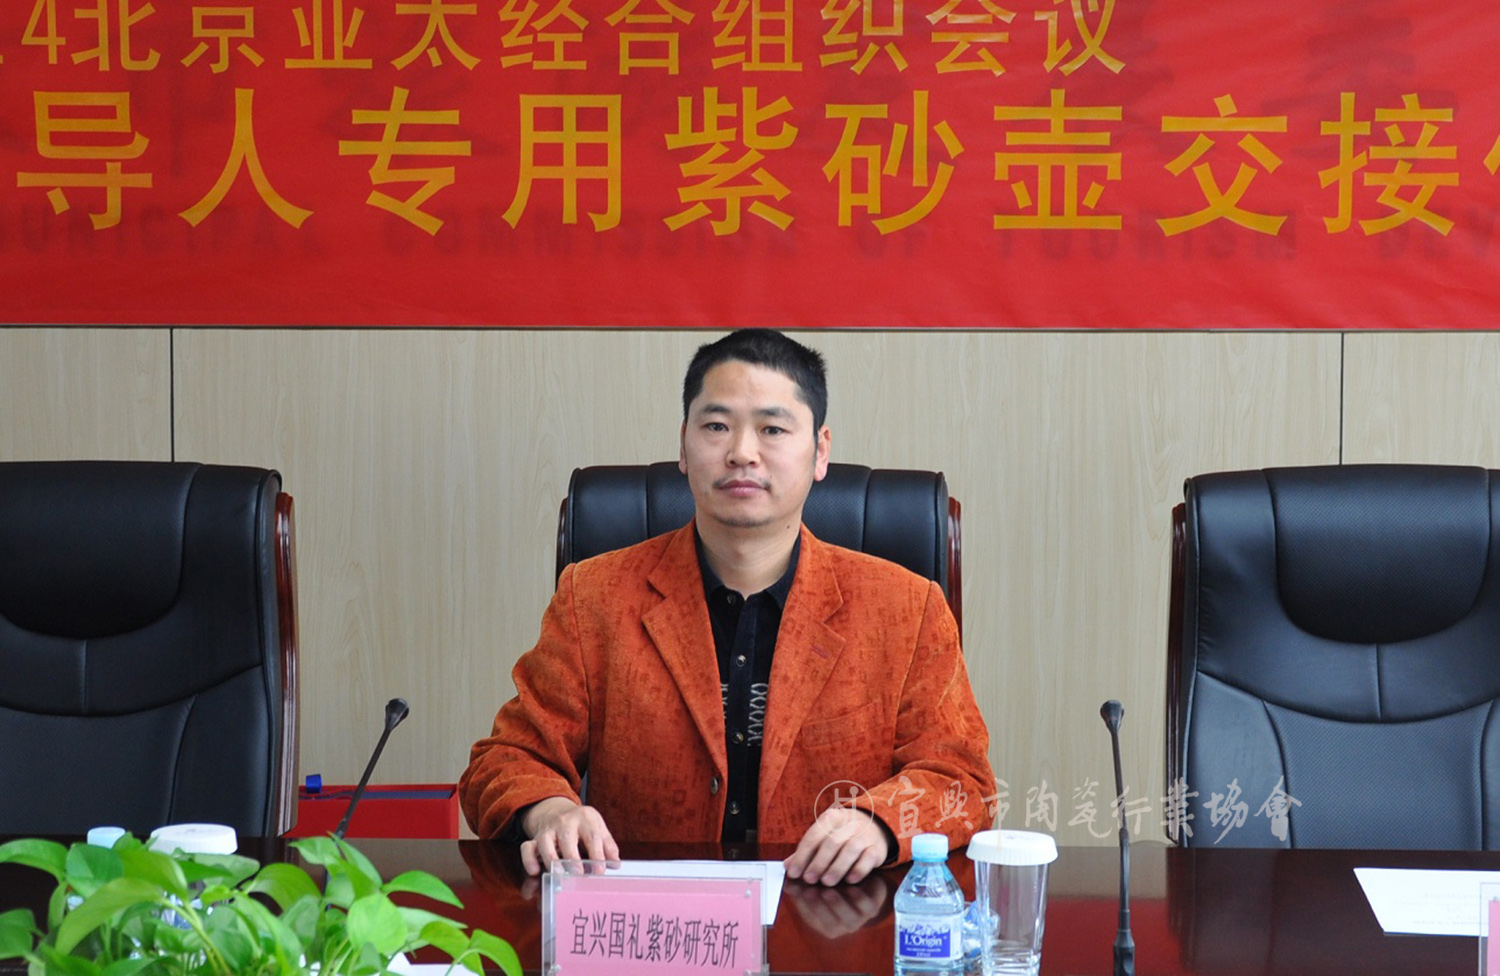 2014年，汪成林于北京亚太经合组织峰会的“国礼壶”交接仪式上.jpg